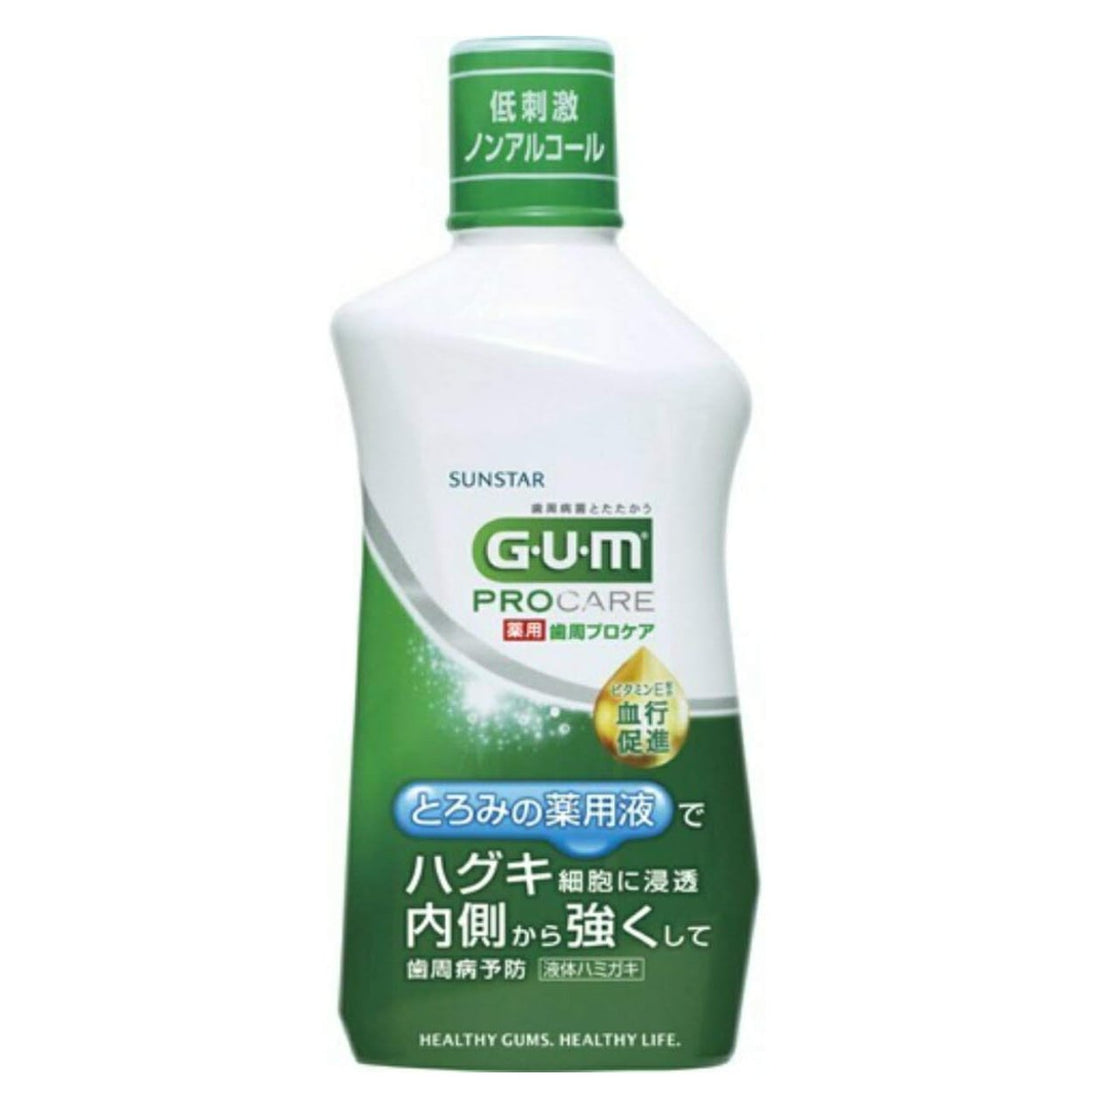 [Quasi-drug] GUM Periodontal Pro Care Dental Rinse 420ml Liquid Toothpaste &lt;Periodontal disease prevention/hug care&gt; - NihonMura